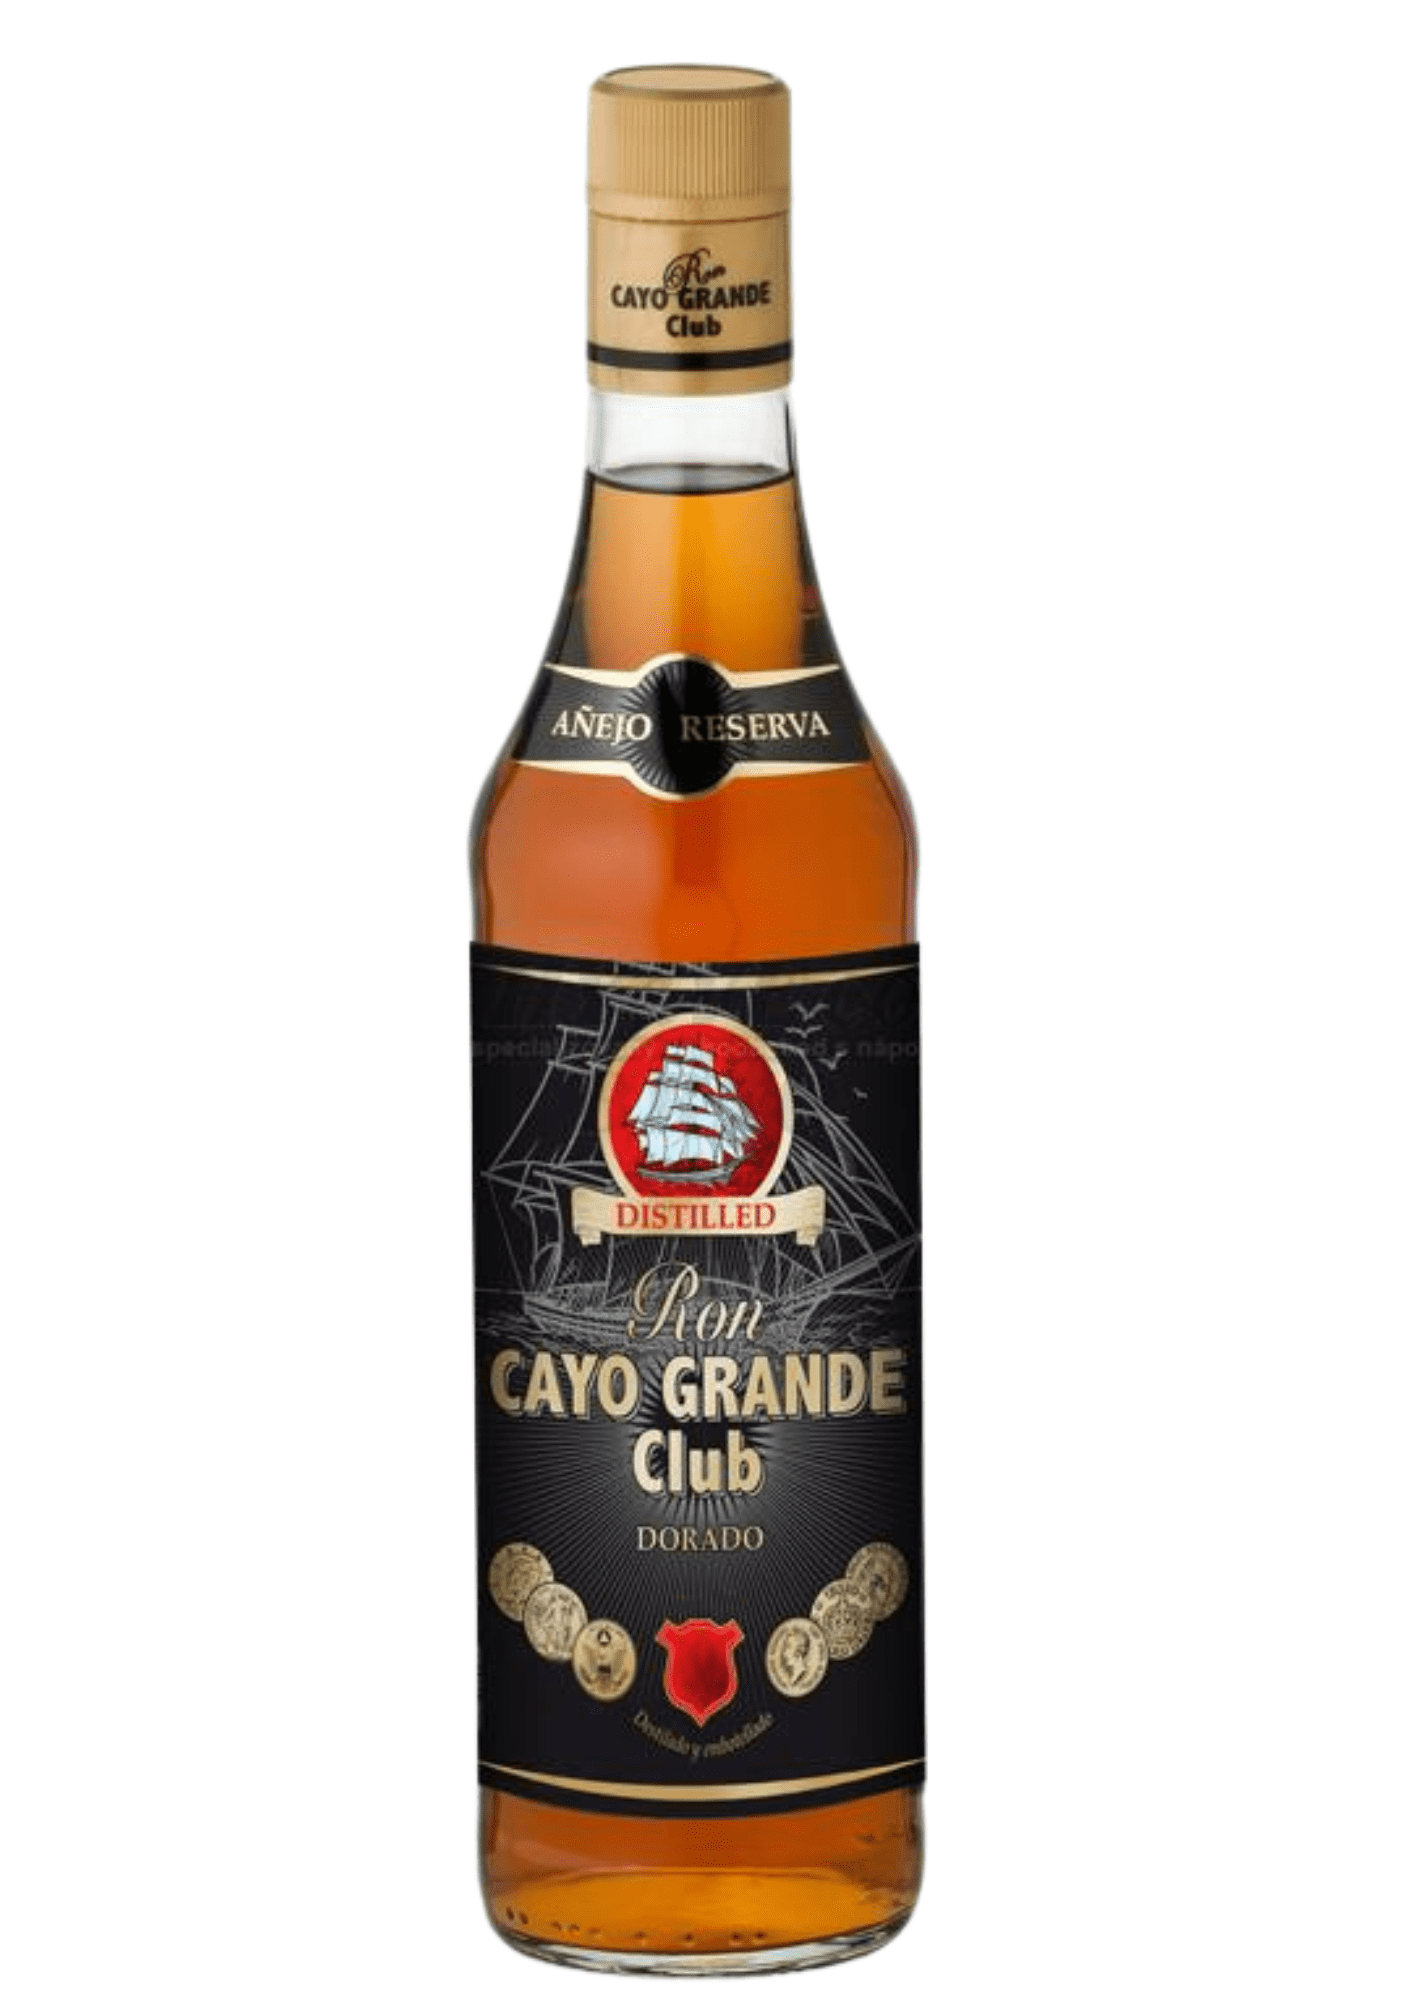 Cayo Grande Club Dorado 37,5% 0,7 l